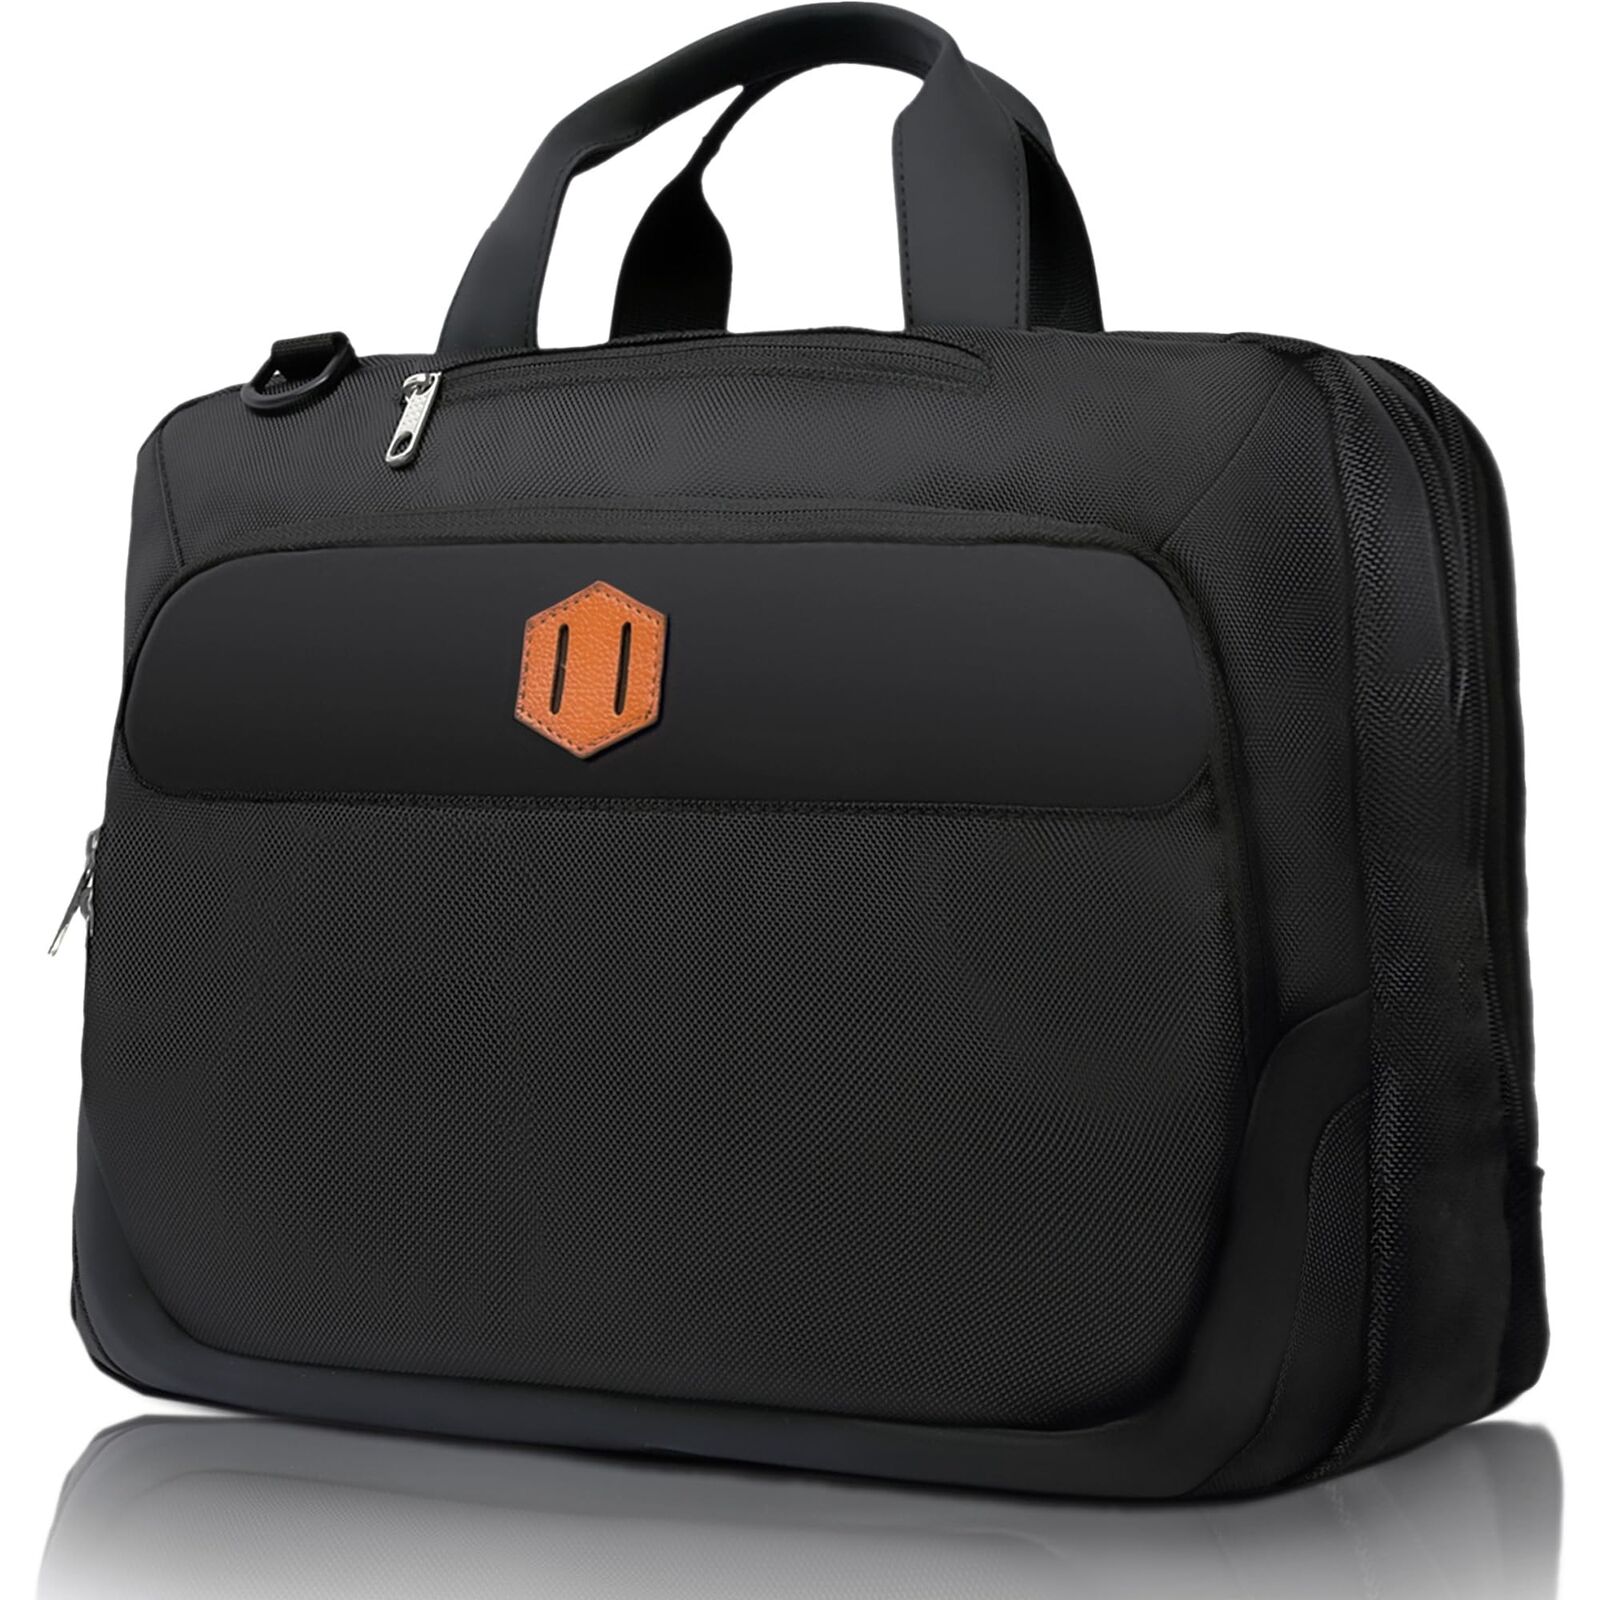 Shoulder Laptop Carry-On Business Large Messenger Bag for Work Business Trave...